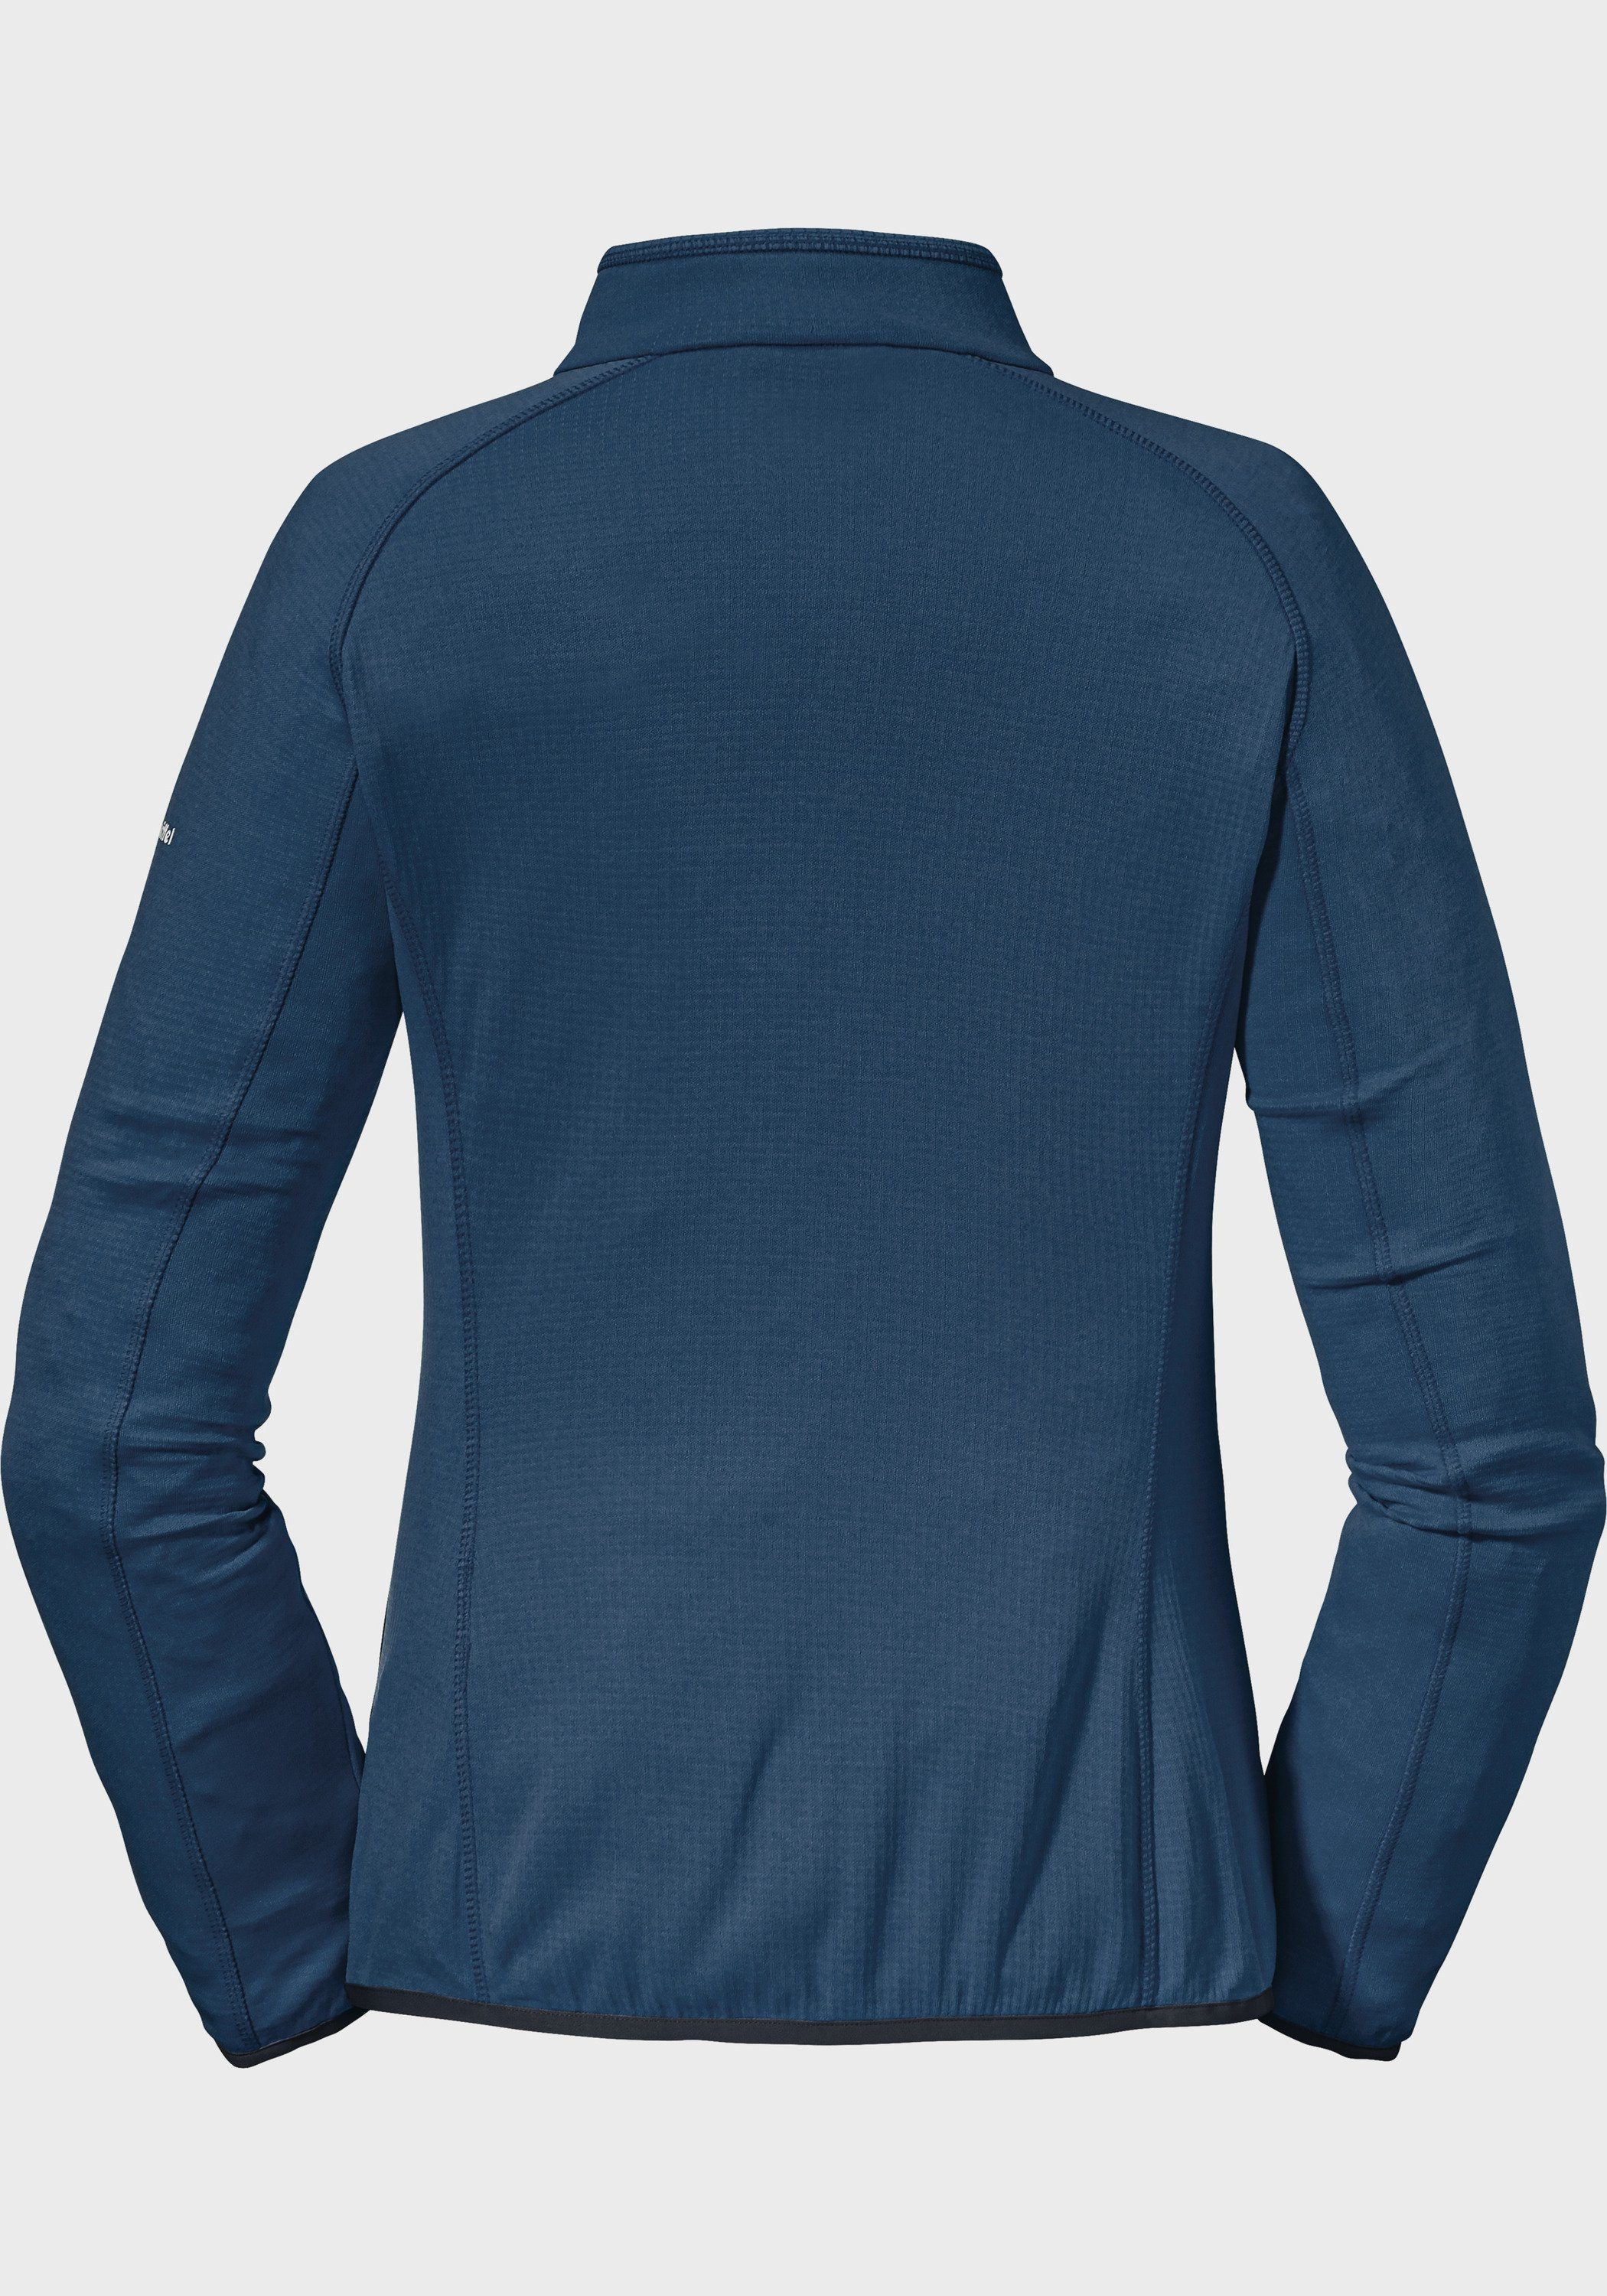 L Fleecejacke Rotwand Fleece Schöffel Jacket blau